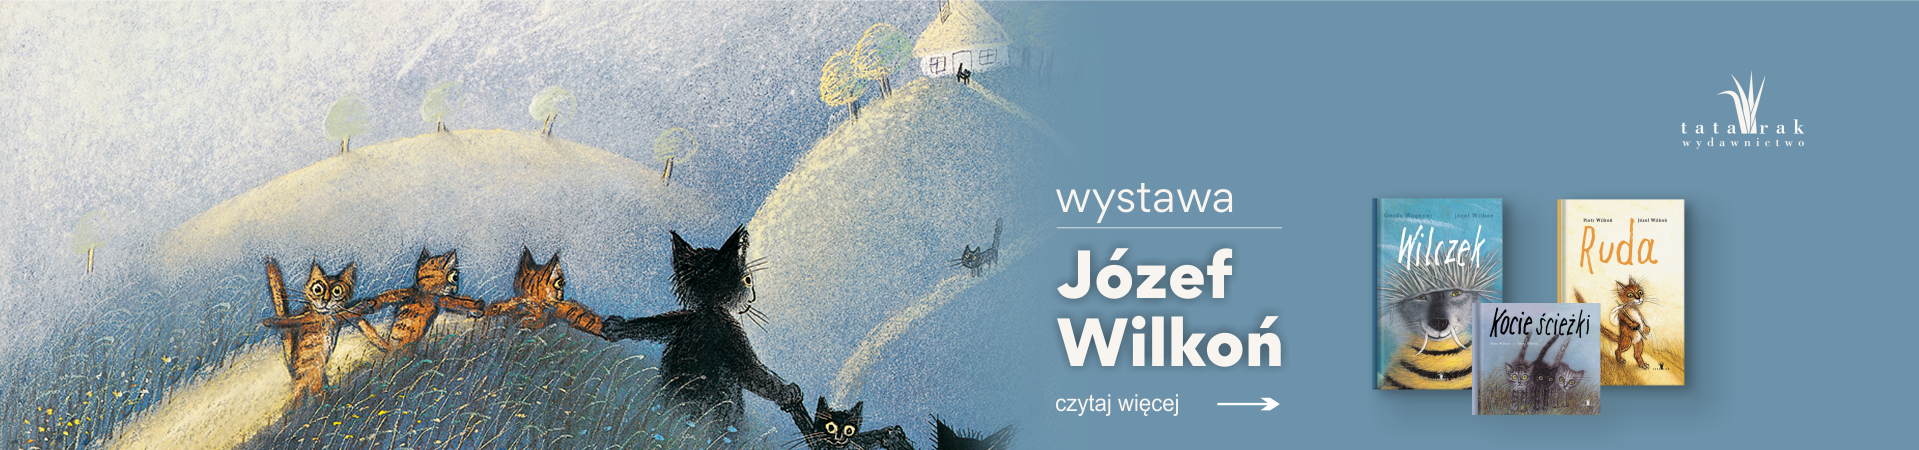 Ilustracje Józefa Wilkonia